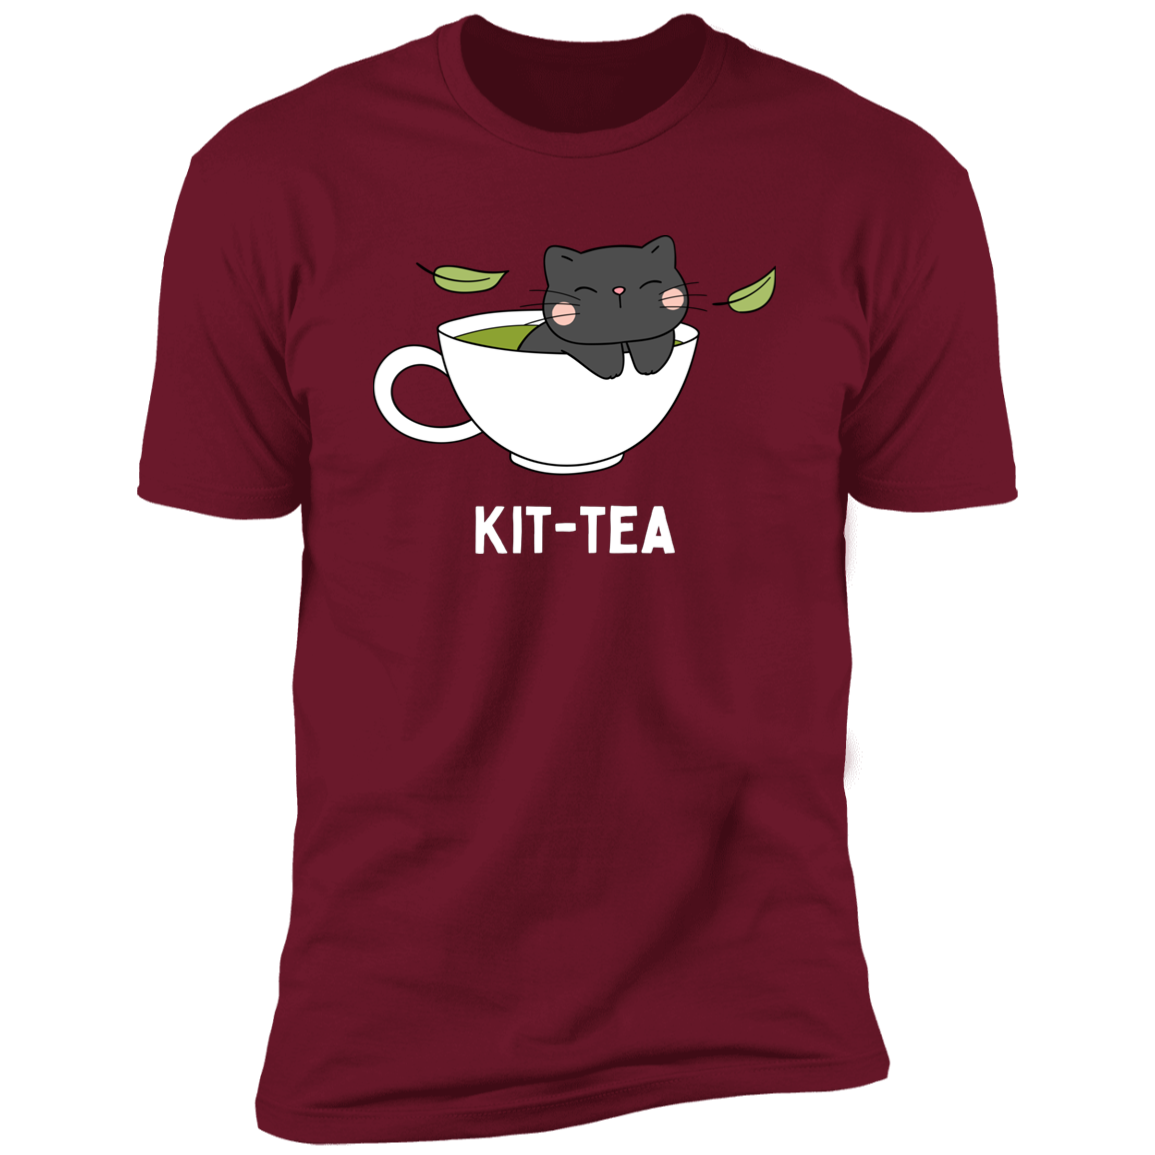 Kitt-Tea T-Shirt, kitty tea shirt, Cat Shirt for humans, funny cat shirt, in cardinal red